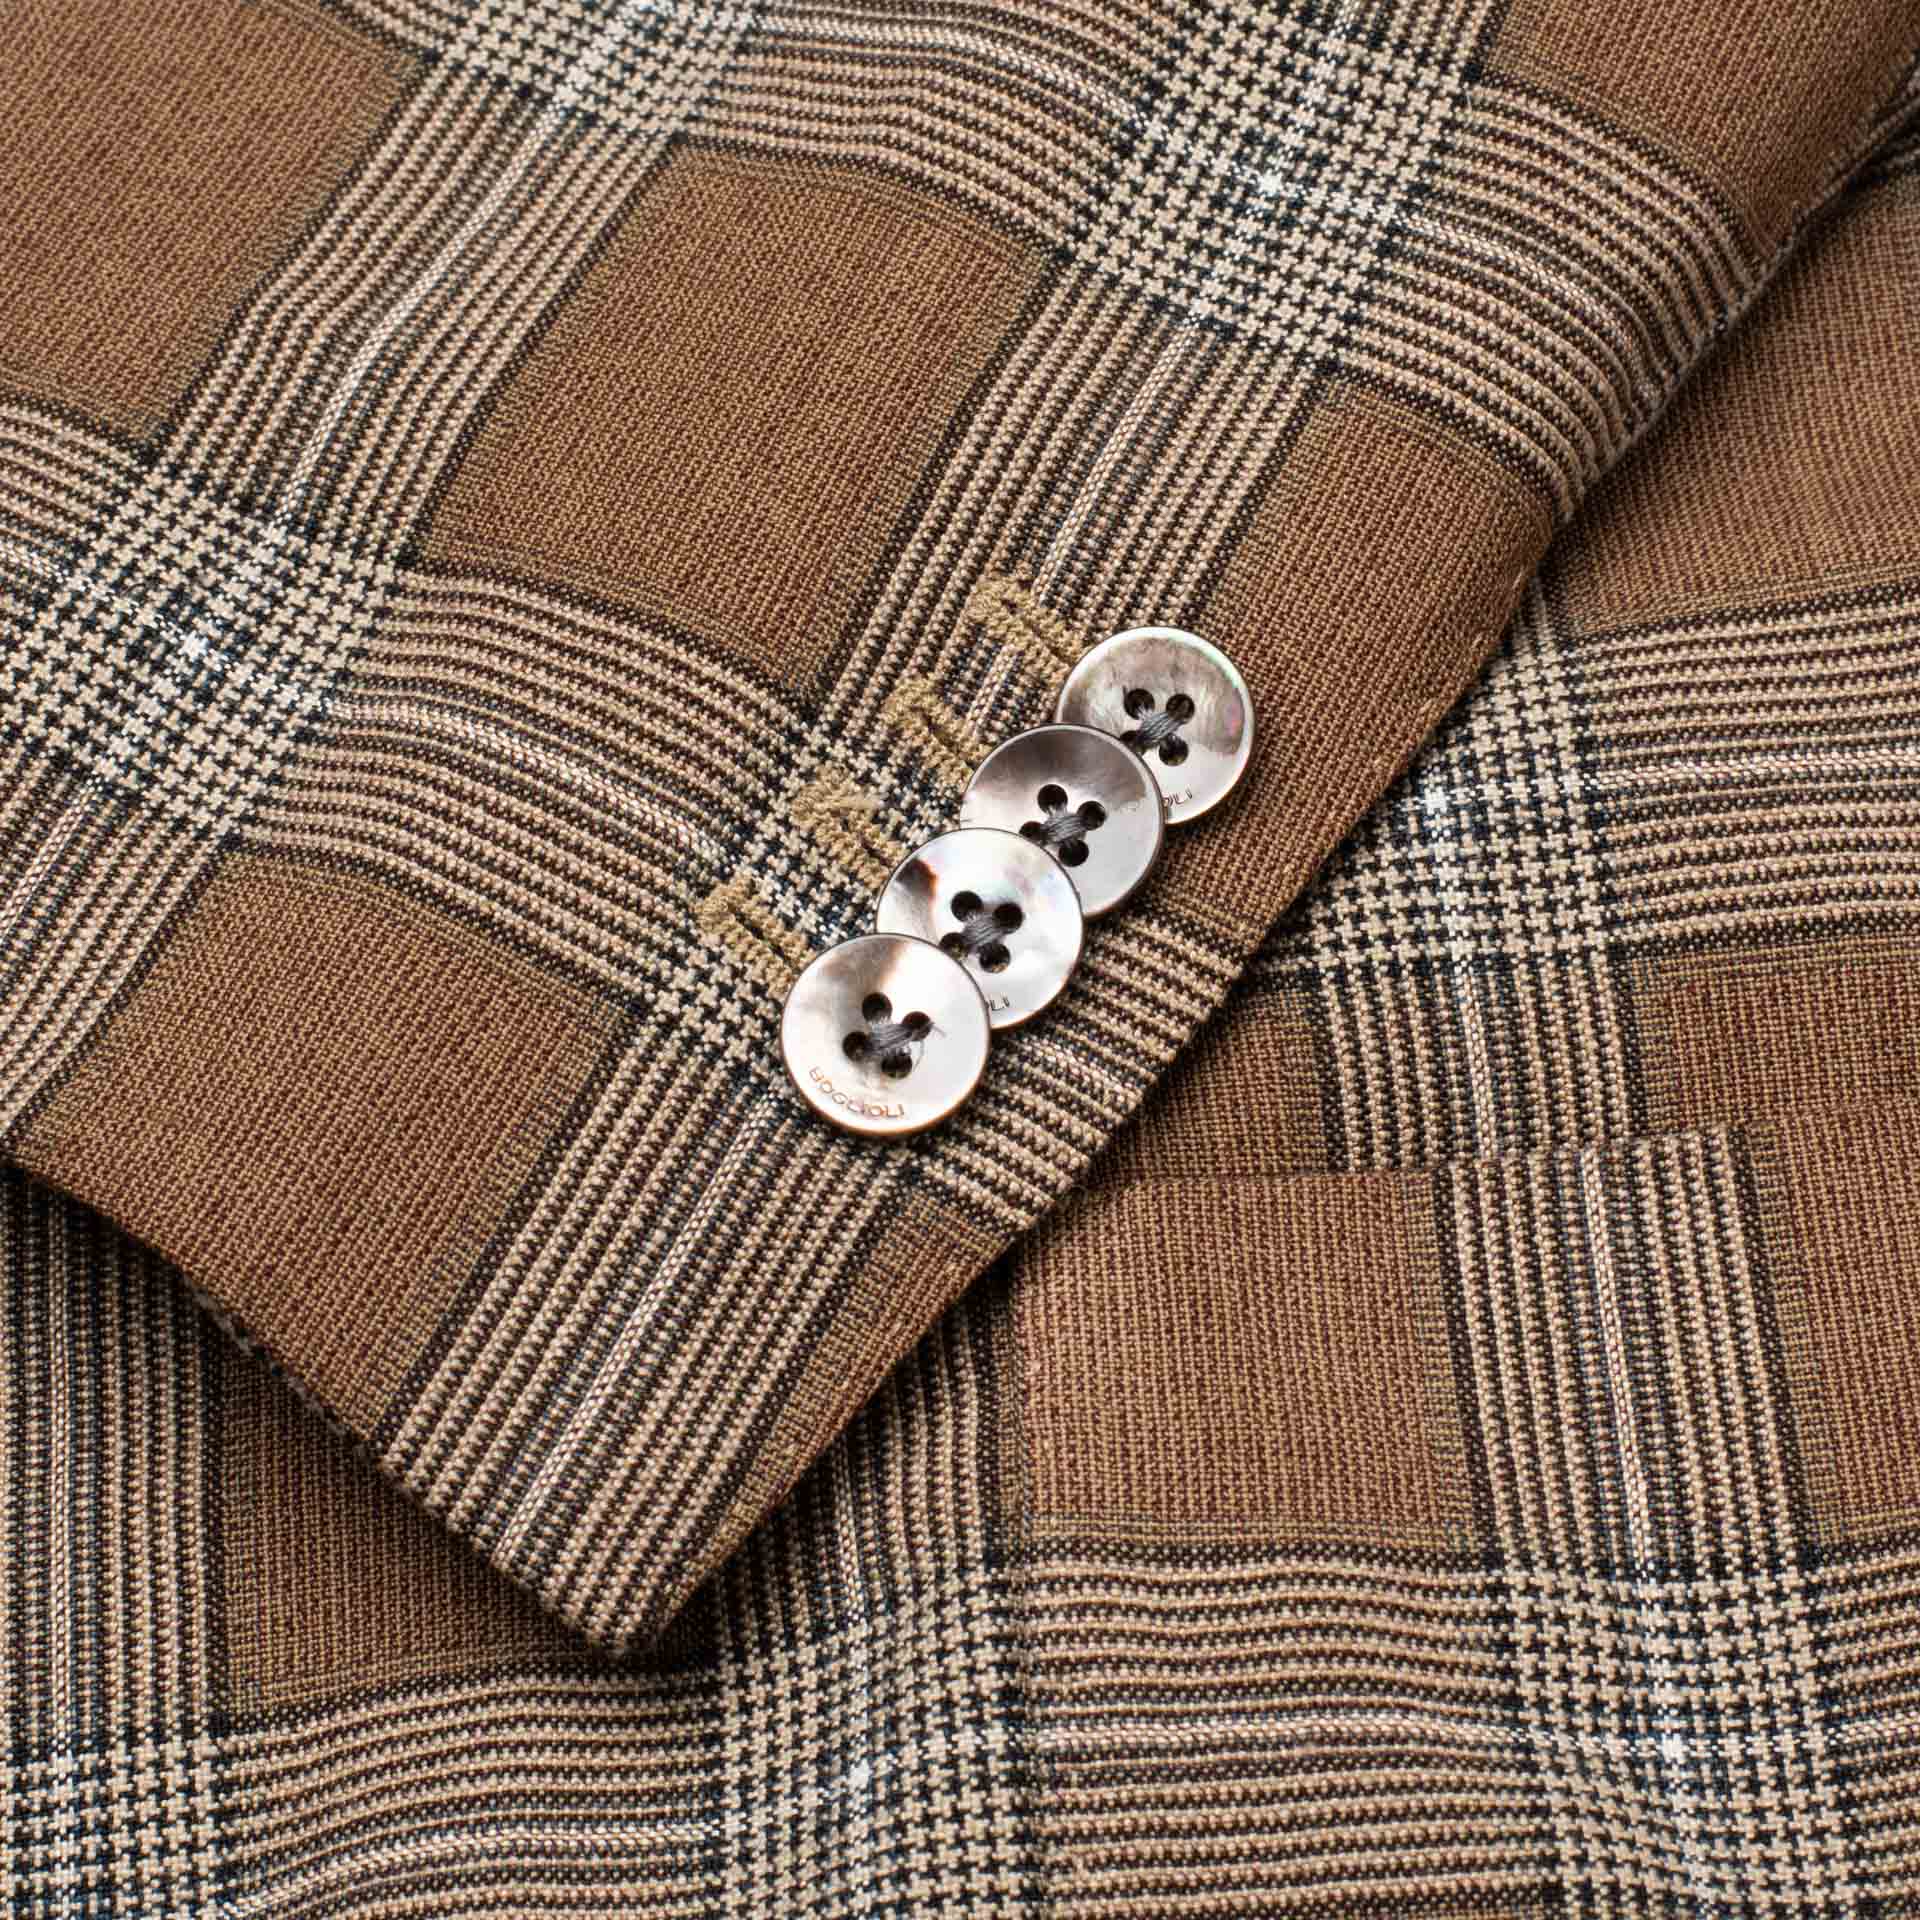 BOGLIOLI "K. Jacket" Brown Plaid Wool-Silk-Linen Soft Jacket EU 48 NEW US 38 BOGLIOLI